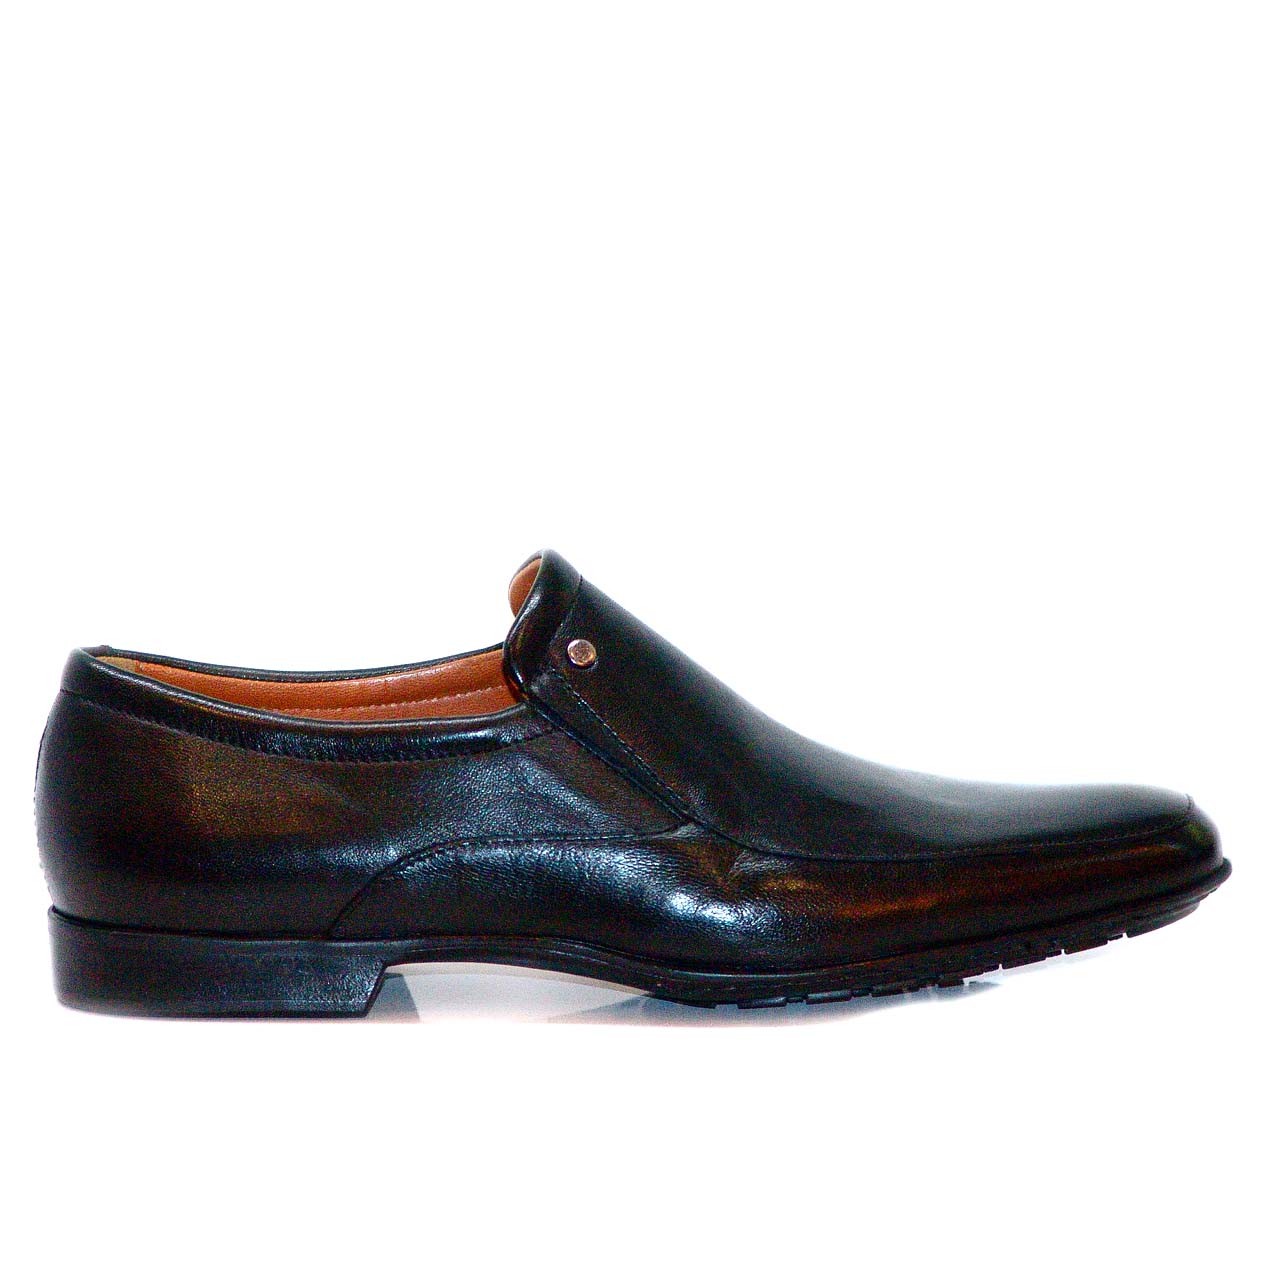 Aldo Bruè 6163 Leather Comfort Loafer - Black